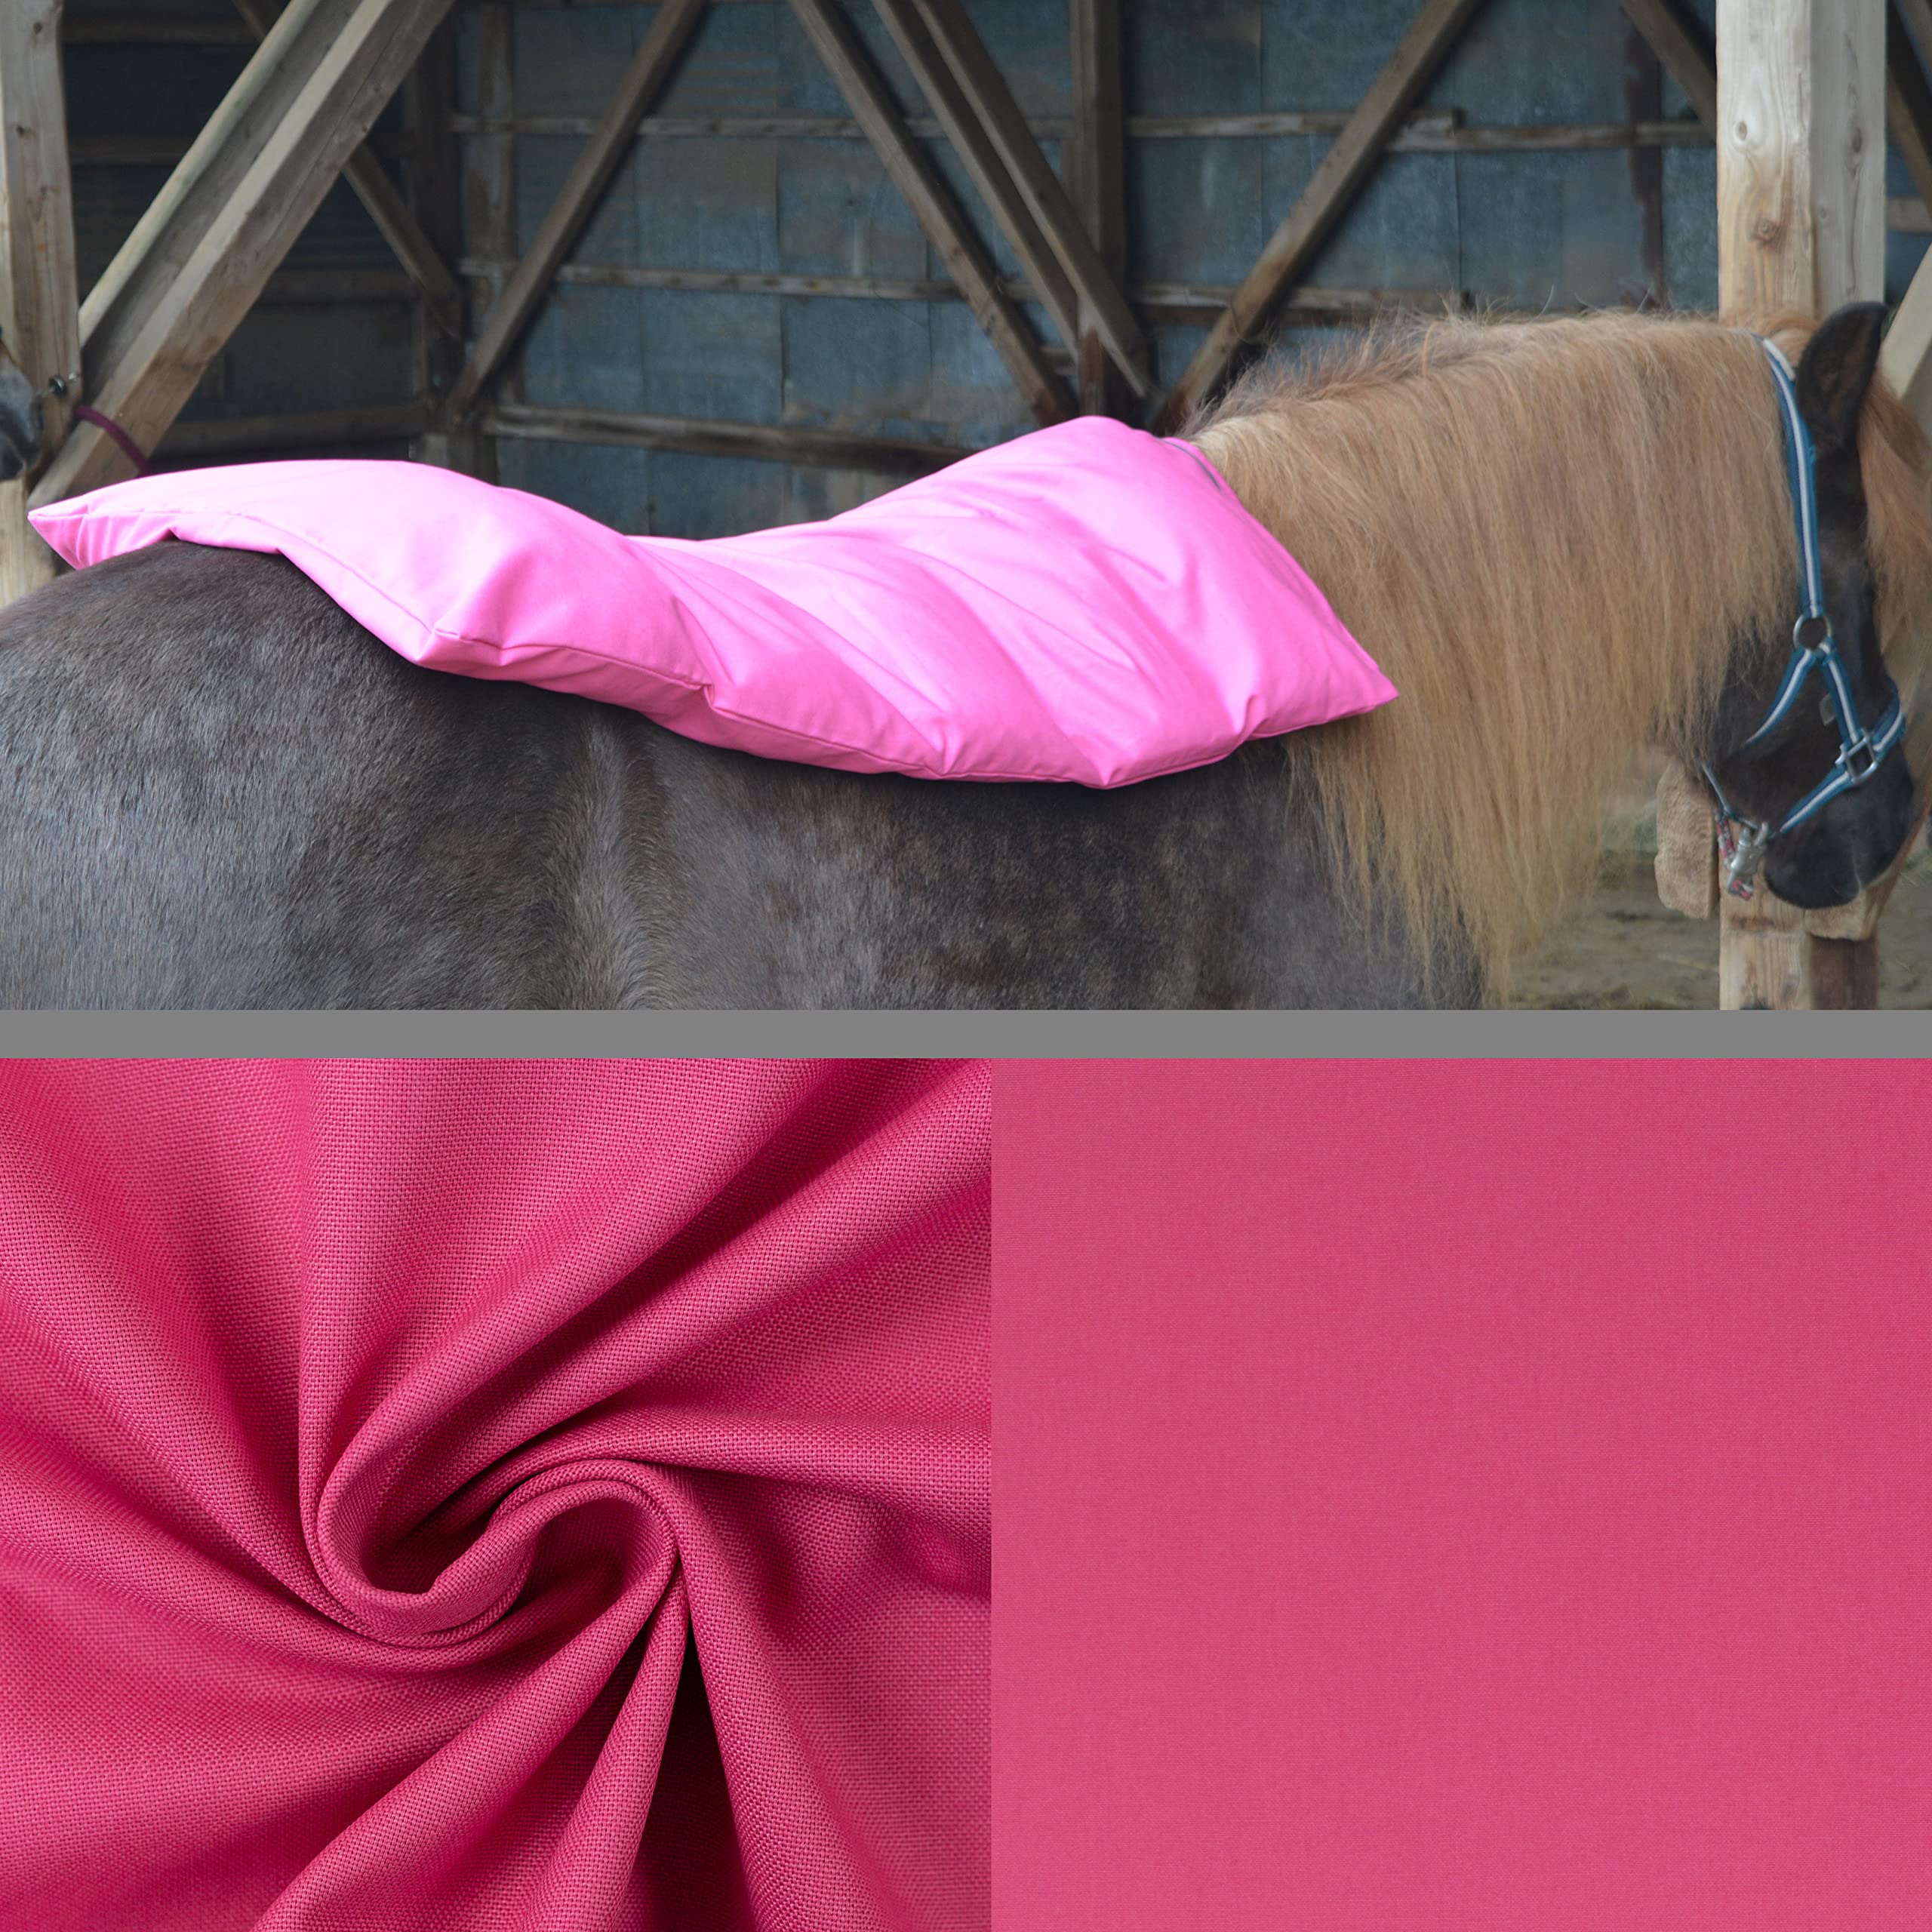 Teichwerk Dinkelspelzkissen Wärmekissen für Pferde Ponys Esel 1 farbig Erika Füllung Premium 90x68